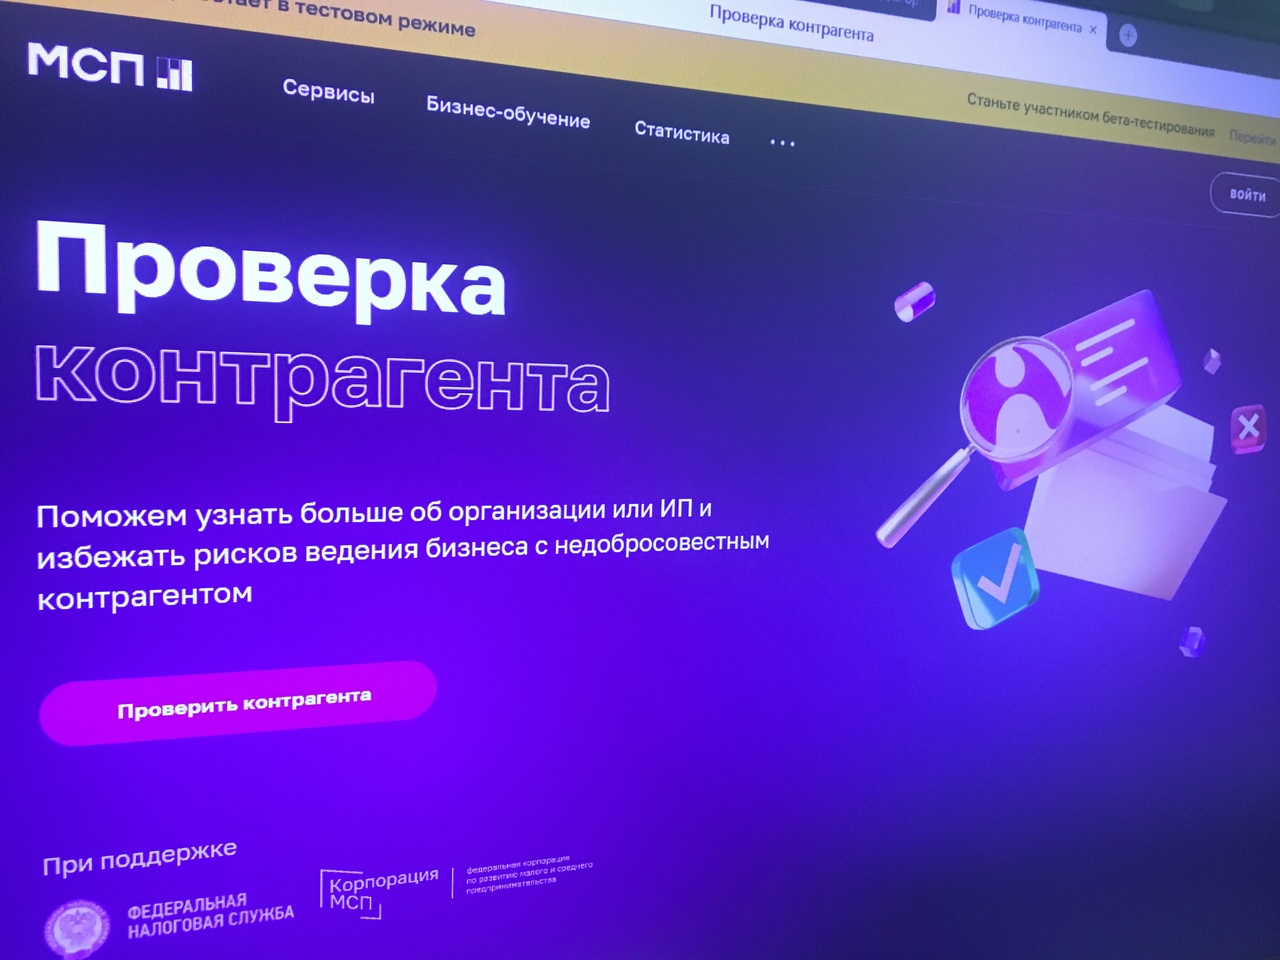 Корпорация МСП совместно с ФНС России запустили на Цифровой платформе МСП.РФ бесплатный сервис по проверке контрагентов